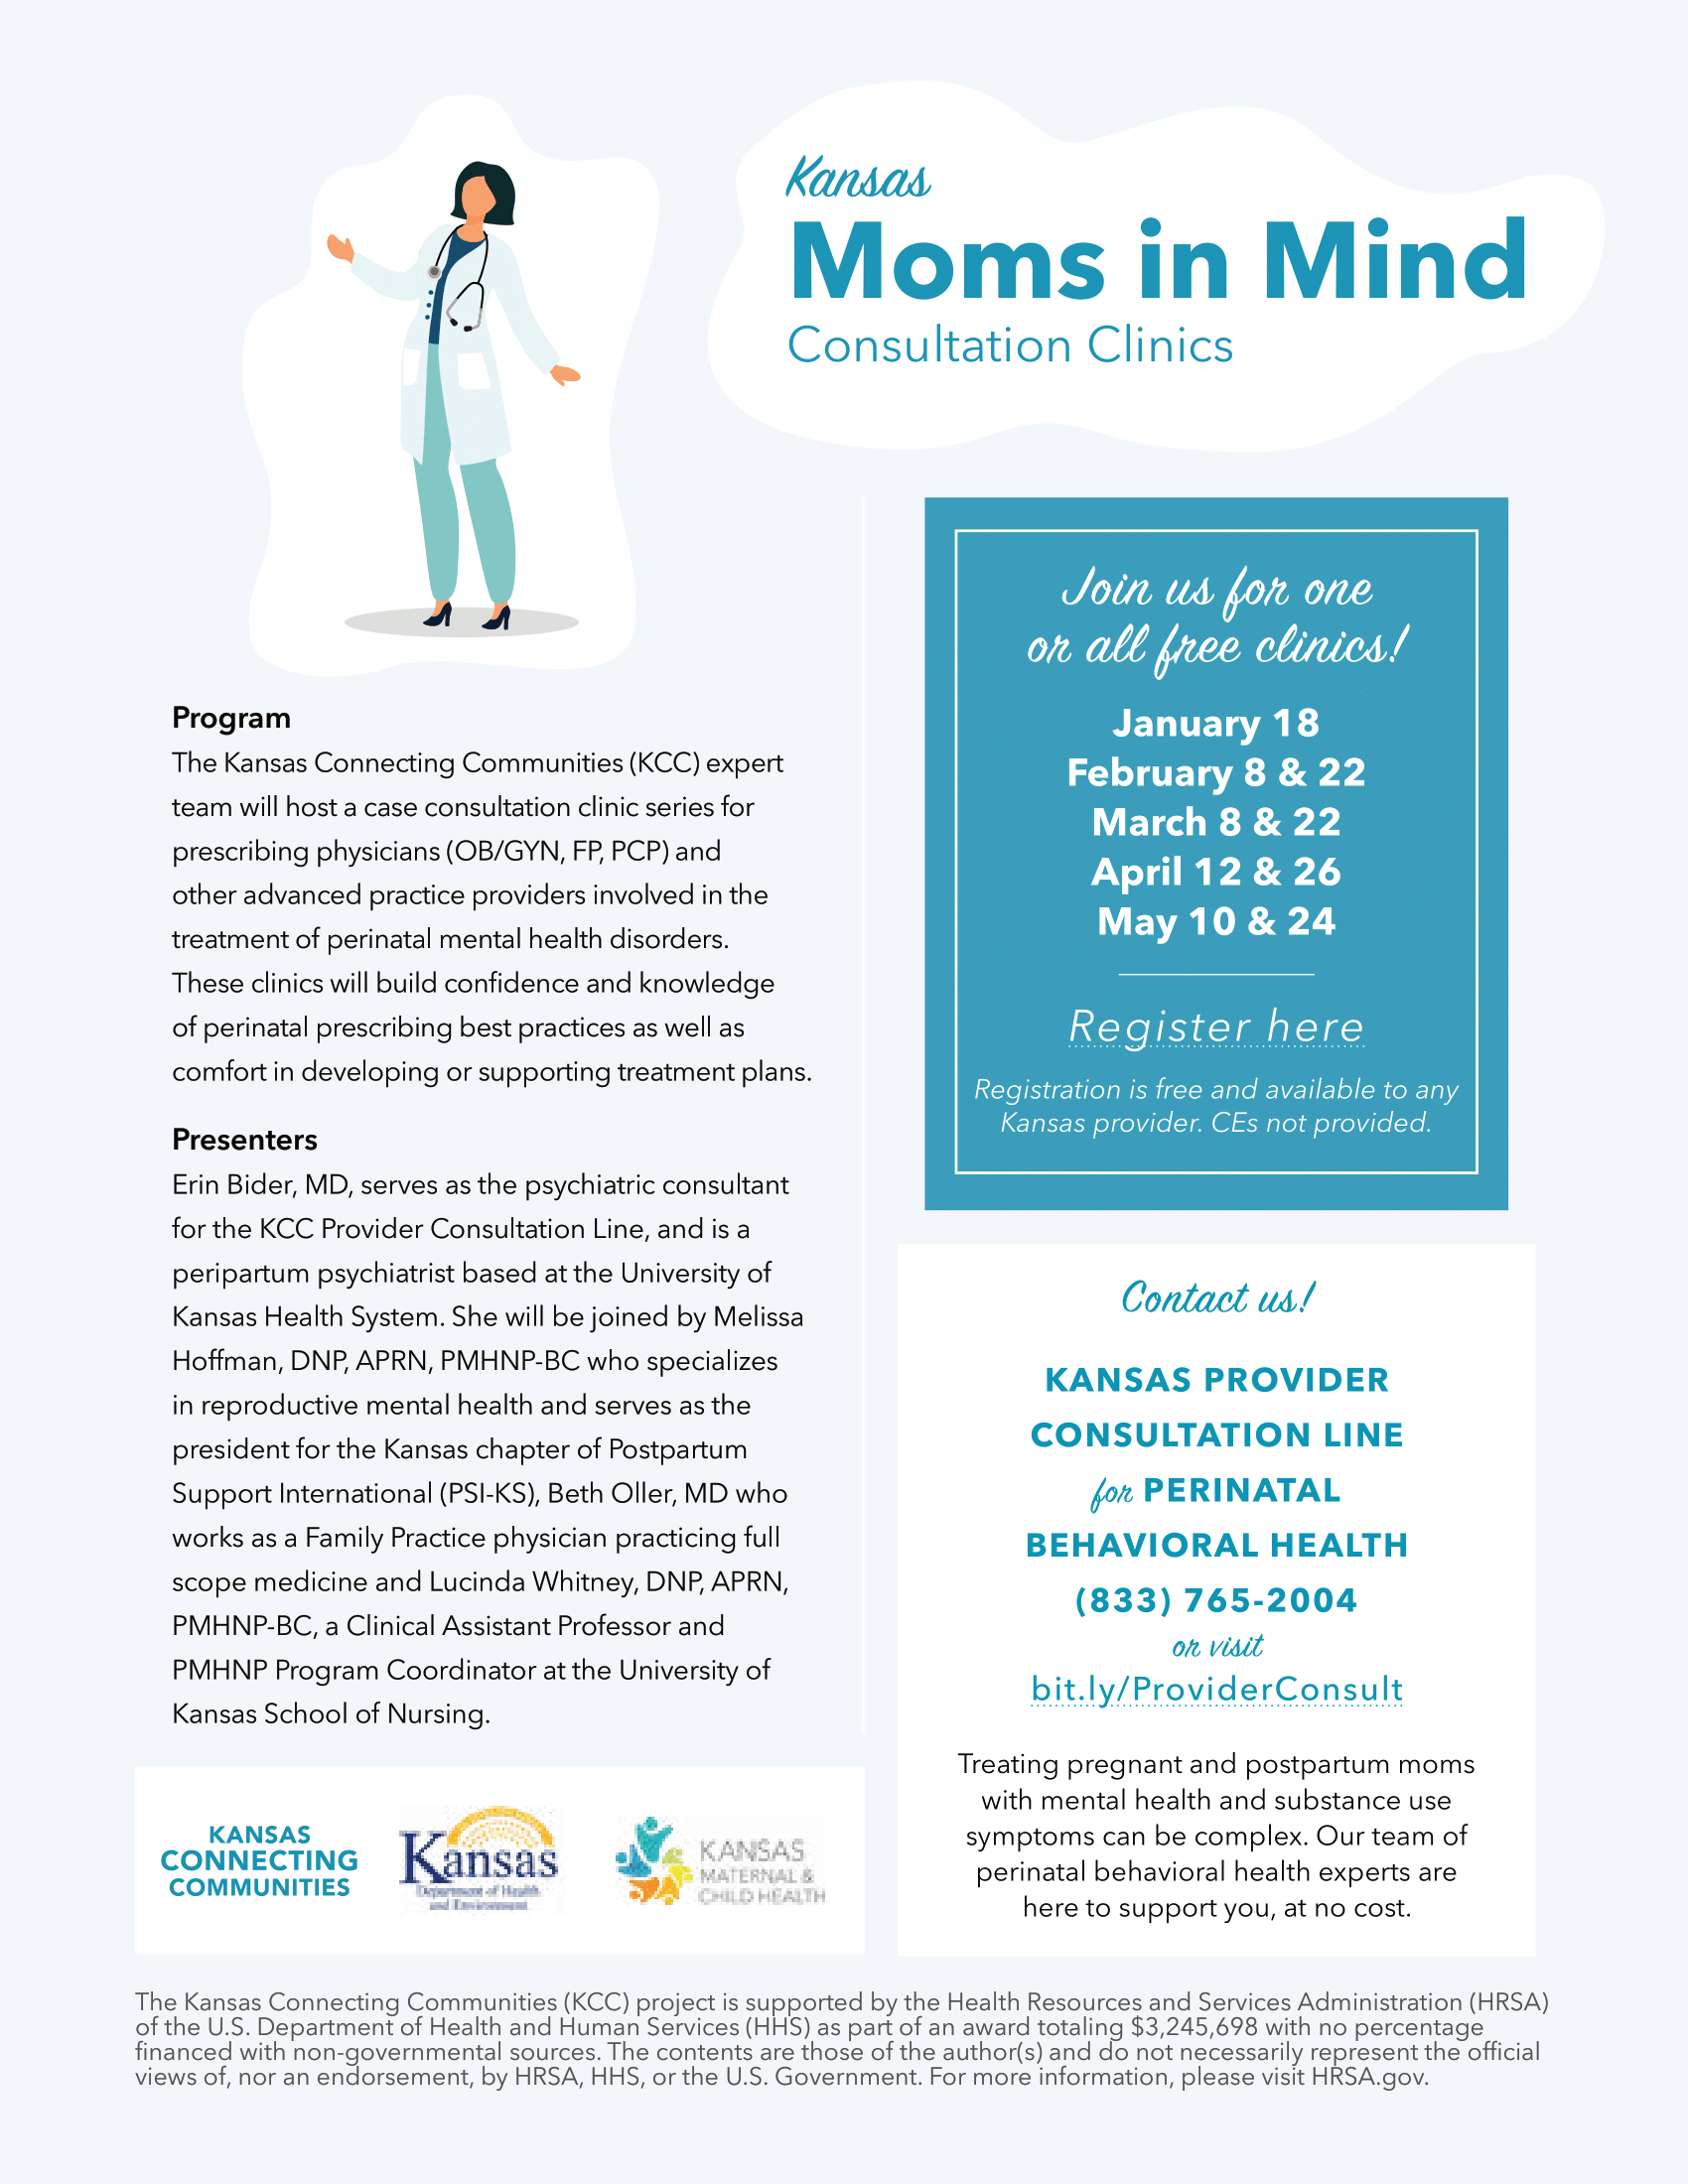 Kansas Moms in Mind Consultation Clinics Flyer